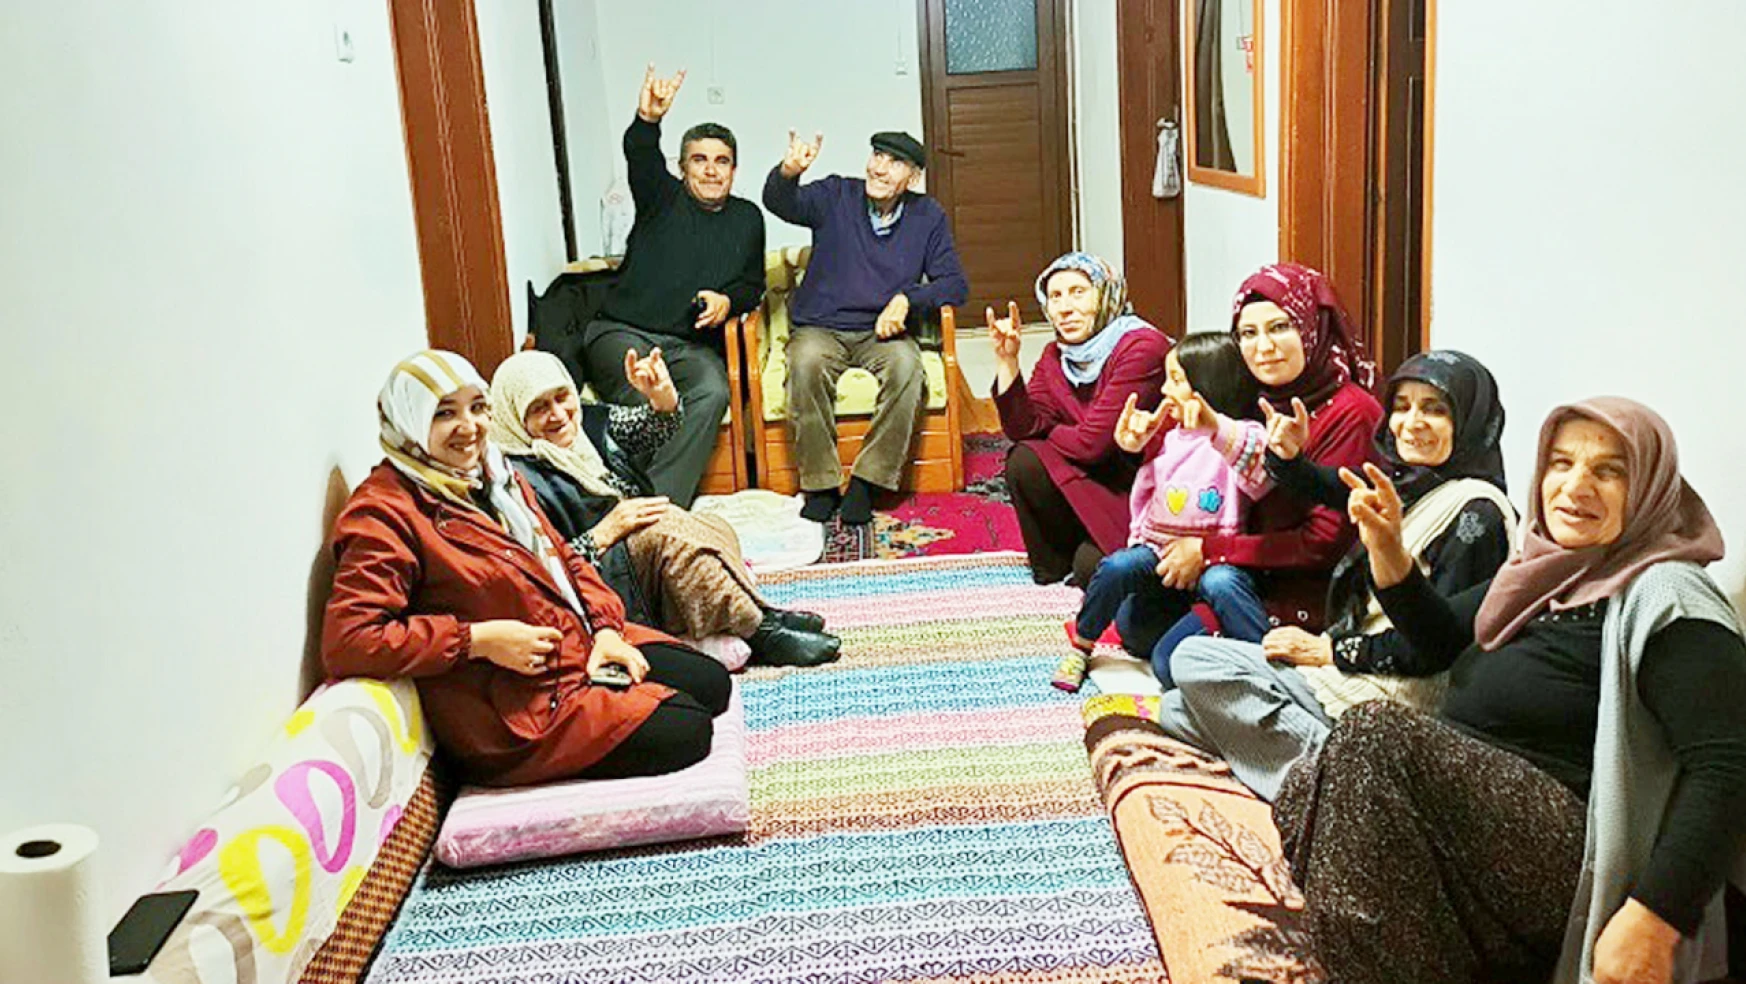 MHP'den 'Komşum Nasılsın' temalı ev ziyaretleri yapılıyor